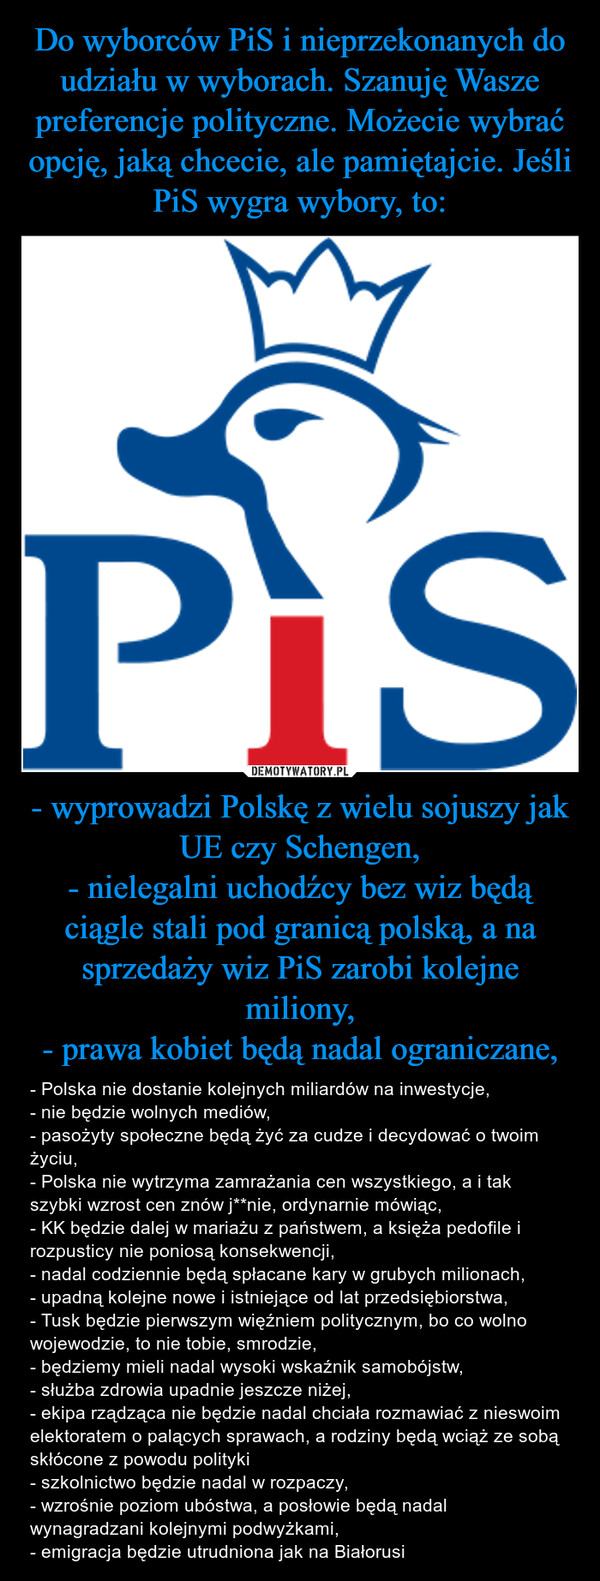 - wyprowadzi Polskę z wielu sojuszy jak UE czy Schengen,- nielegalni uchodźcy bez wiz będą ciągle stali pod granicą polską, a na sprzedaży wiz PiS zarobi kolejne miliony,- prawa kobiet będą nadal ograniczane, – - Polska nie dostanie kolejnych miliardów na inwestycje,- nie będzie wolnych mediów,- pasożyty społeczne będą żyć za cudze i decydować o twoim życiu,- Polska nie wytrzyma zamrażania cen wszystkiego, a i tak szybki wzrost cen znów j**nie, ordynarnie mówiąc,- KK będzie dalej w mariażu z państwem, a księża pedofile i rozpusticy nie poniosą konsekwencji,- nadal codziennie będą spłacane kary w grubych milionach,- upadną kolejne nowe i istniejące od lat przedsiębiorstwa,- Tusk będzie pierwszym więźniem politycznym, bo co wolno wojewodzie, to nie tobie, smrodzie,- będziemy mieli nadal wysoki wskaźnik samobójstw,- służba zdrowia upadnie jeszcze niżej,- ekipa rządząca nie będzie nadal chciała rozmawiać z nieswoim elektoratem o palących sprawach, a rodziny będą wciąż ze sobą skłócone z powodu polityki- szkolnictwo będzie nadal w rozpaczy,- wzrośnie poziom ubóstwa, a posłowie będą nadal wynagradzani kolejnymi podwyżkami,- emigracja będzie utrudniona jak na Białorusi Pis